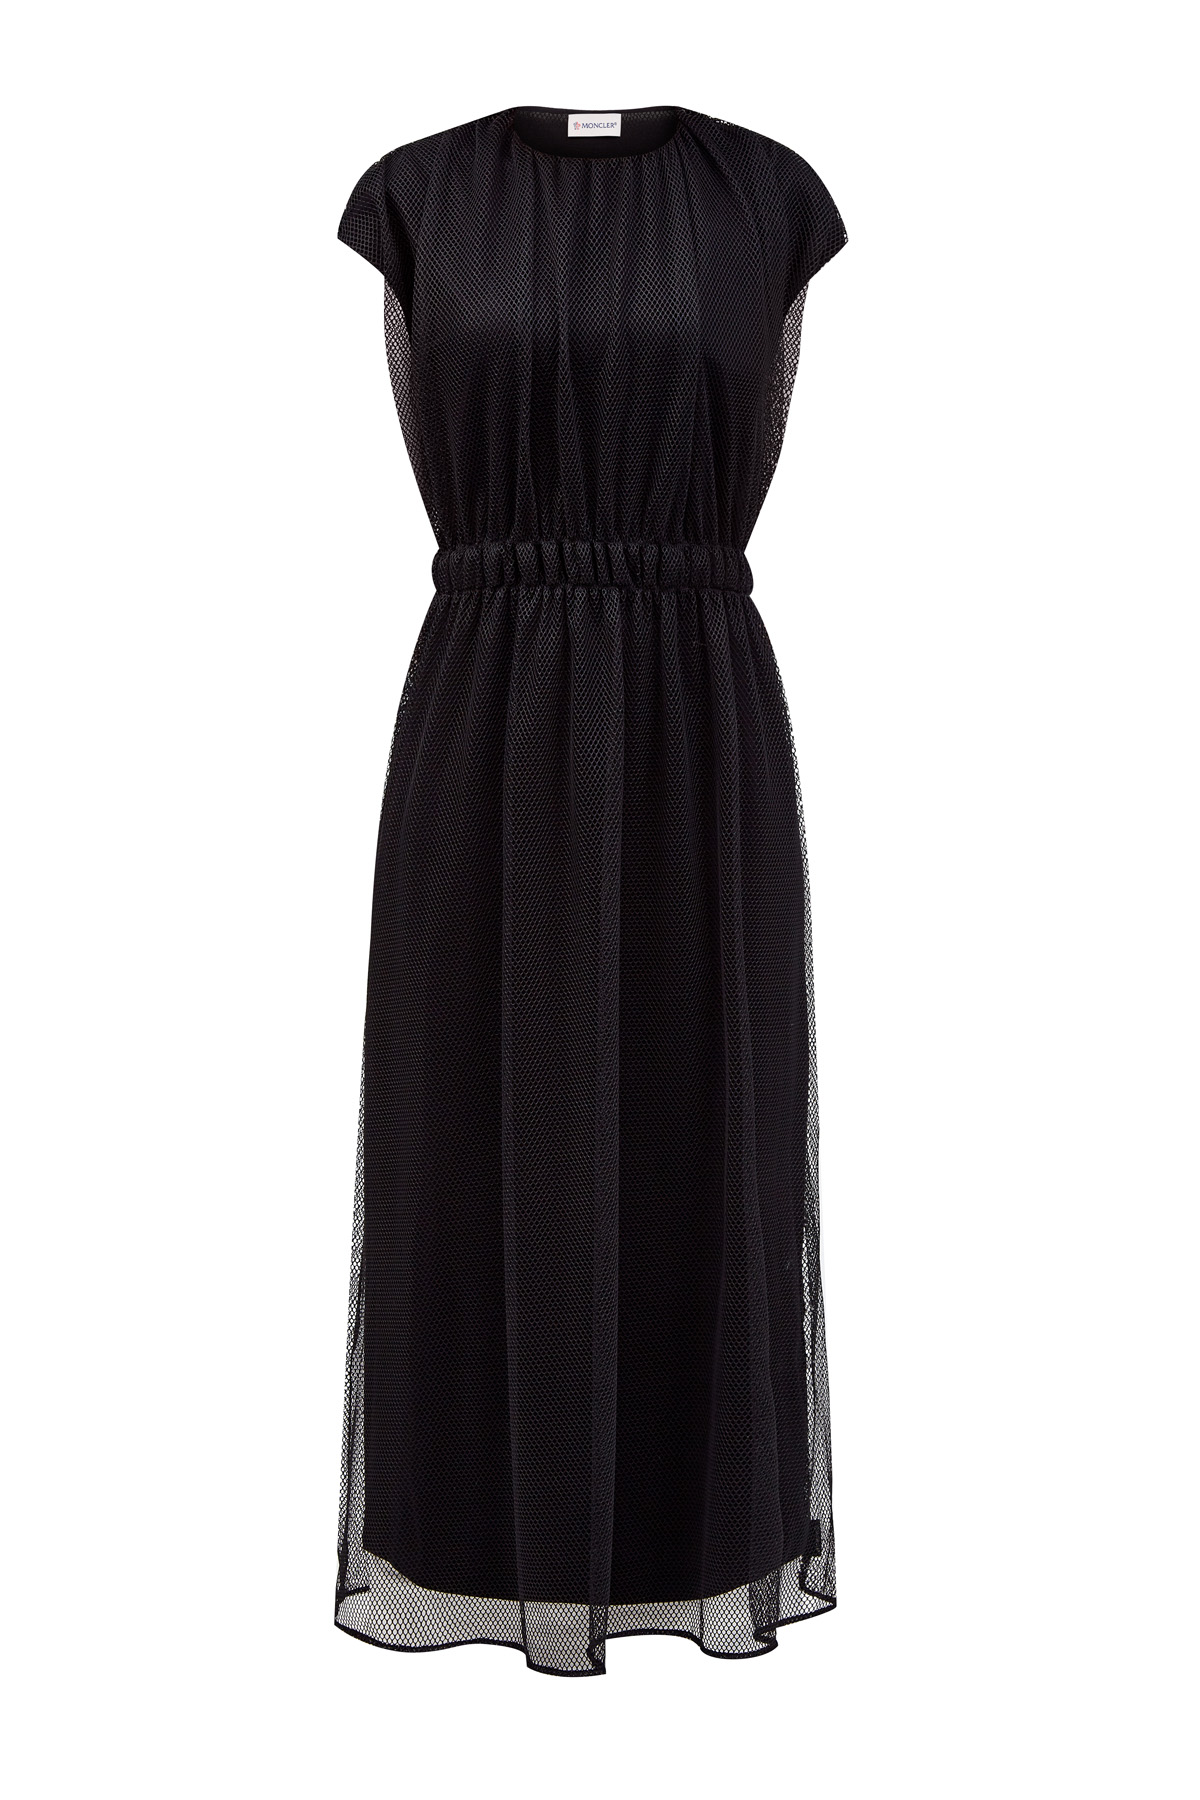 Двухслойное платье из хлопка и мембраны с разрезами по бокам MONCLER, цвет черный, размер 42 - фото 1